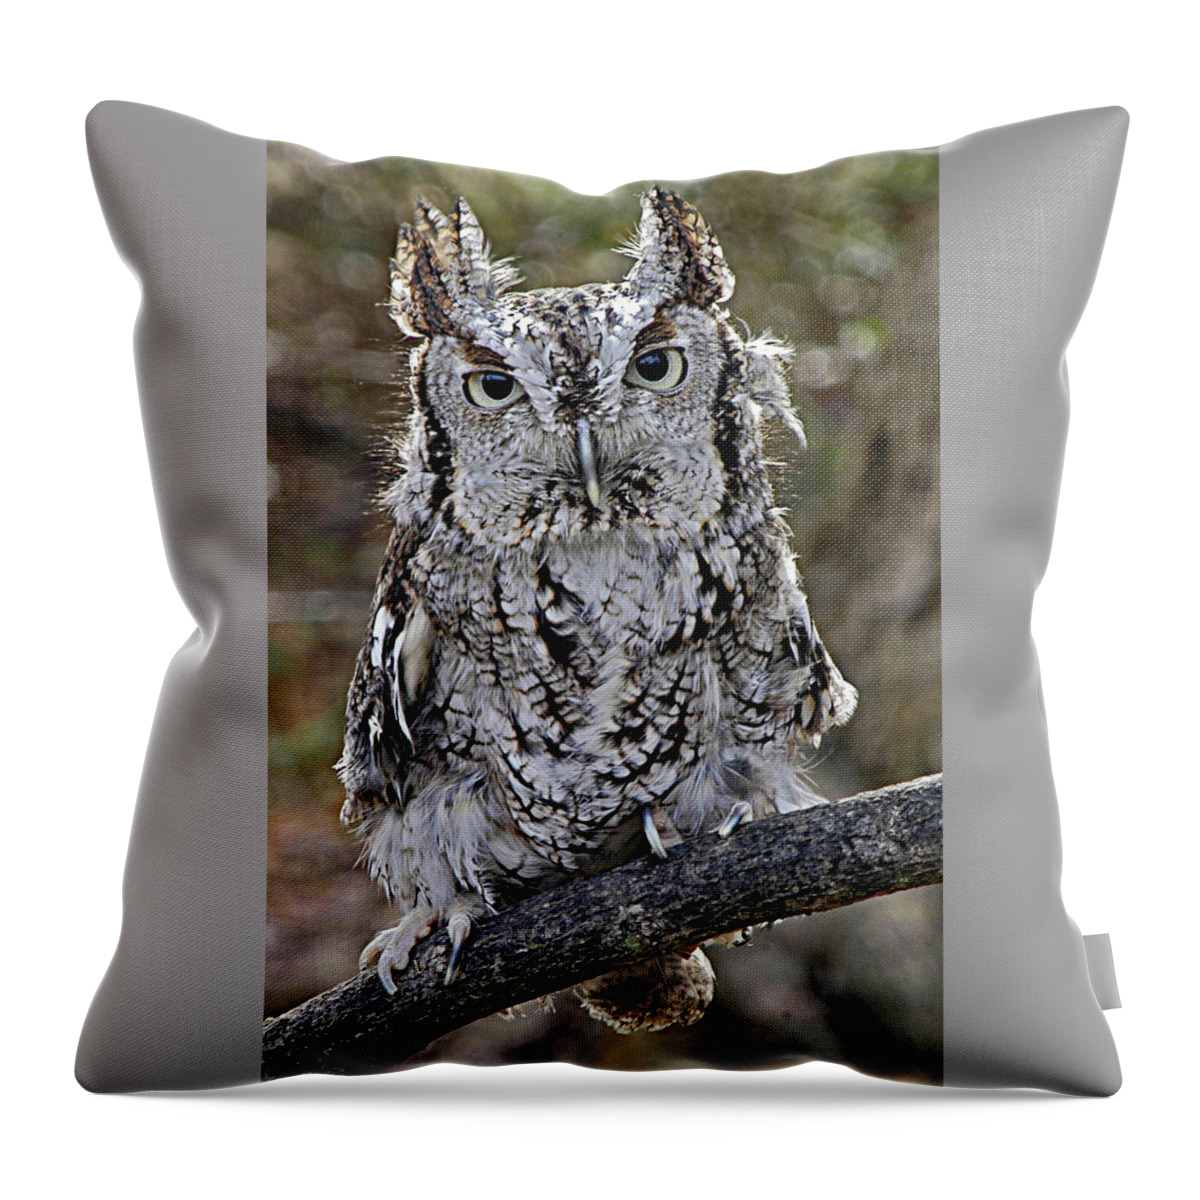 Birds Throw Pillow featuring the photograph Screech Owl by Minnie Gallman